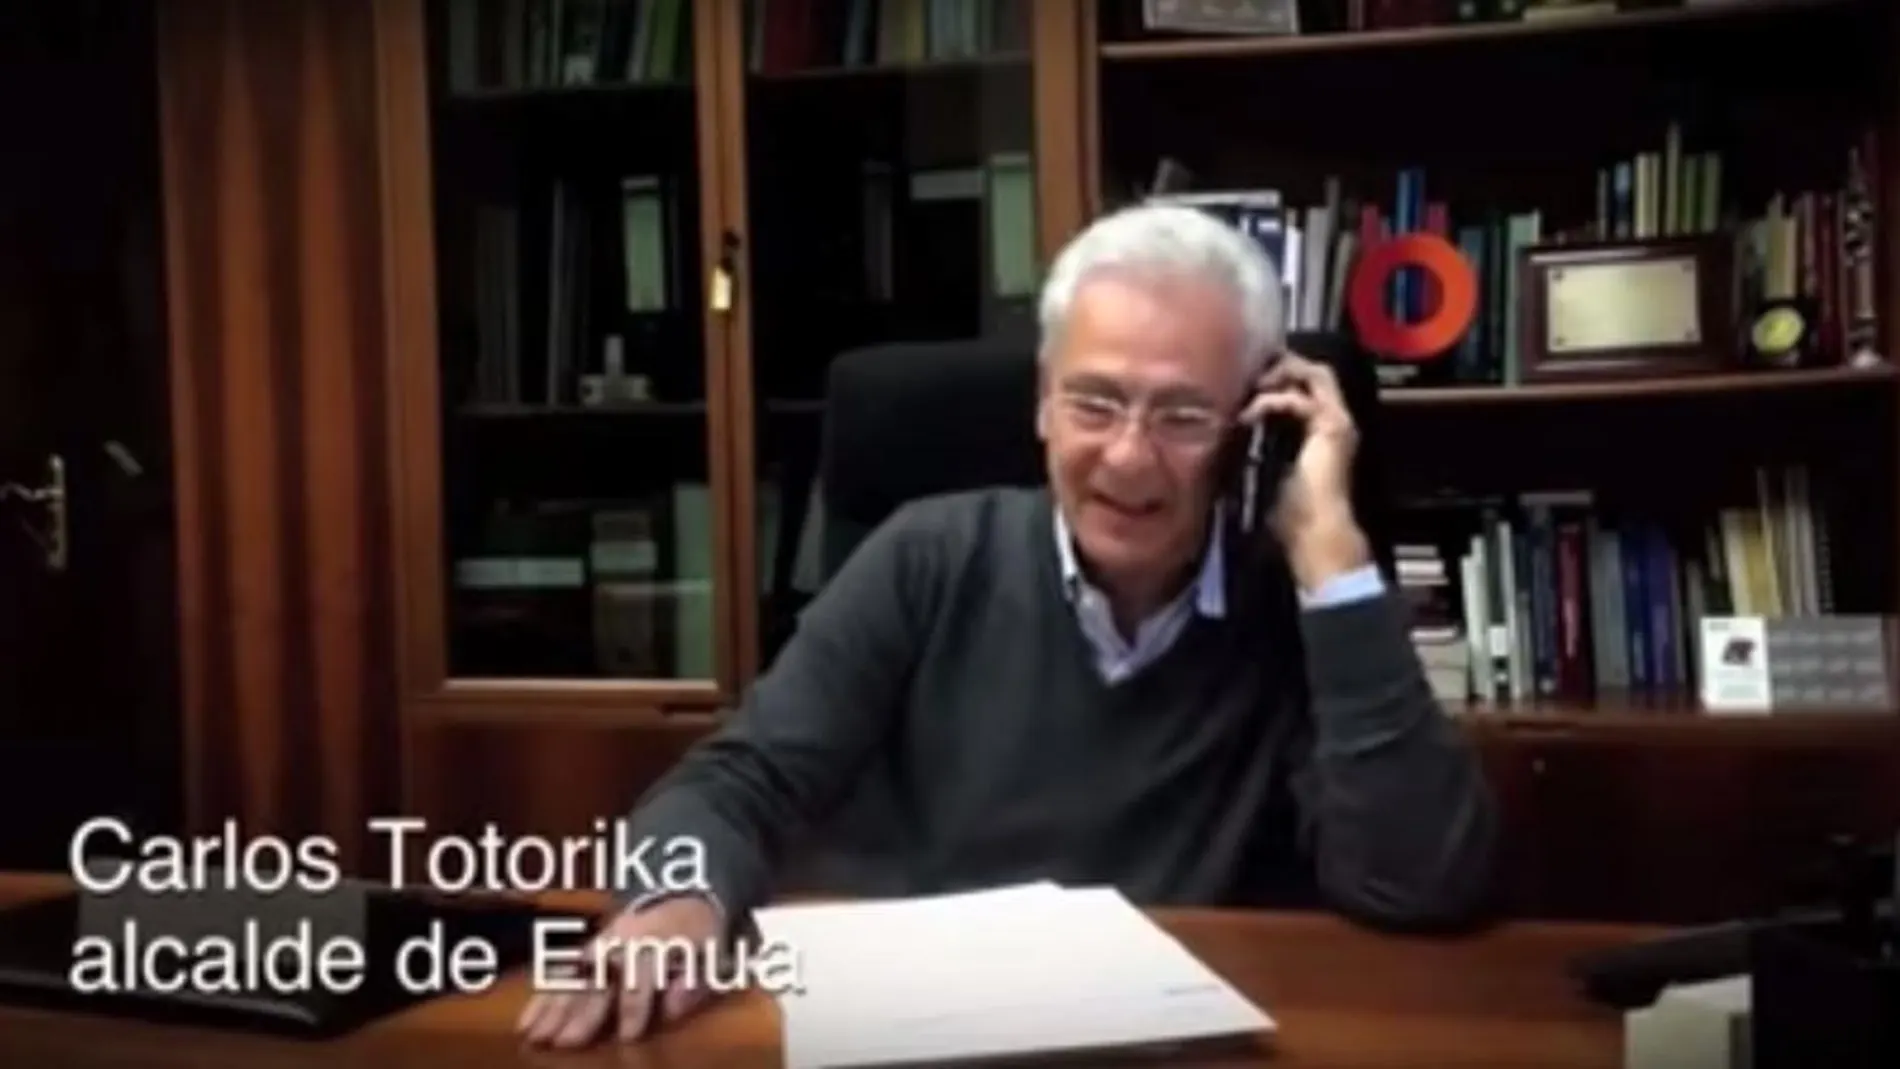 Fotógrama del vídeo, en el que aparece Carlos Totorika, alcalde socialista de Ermua